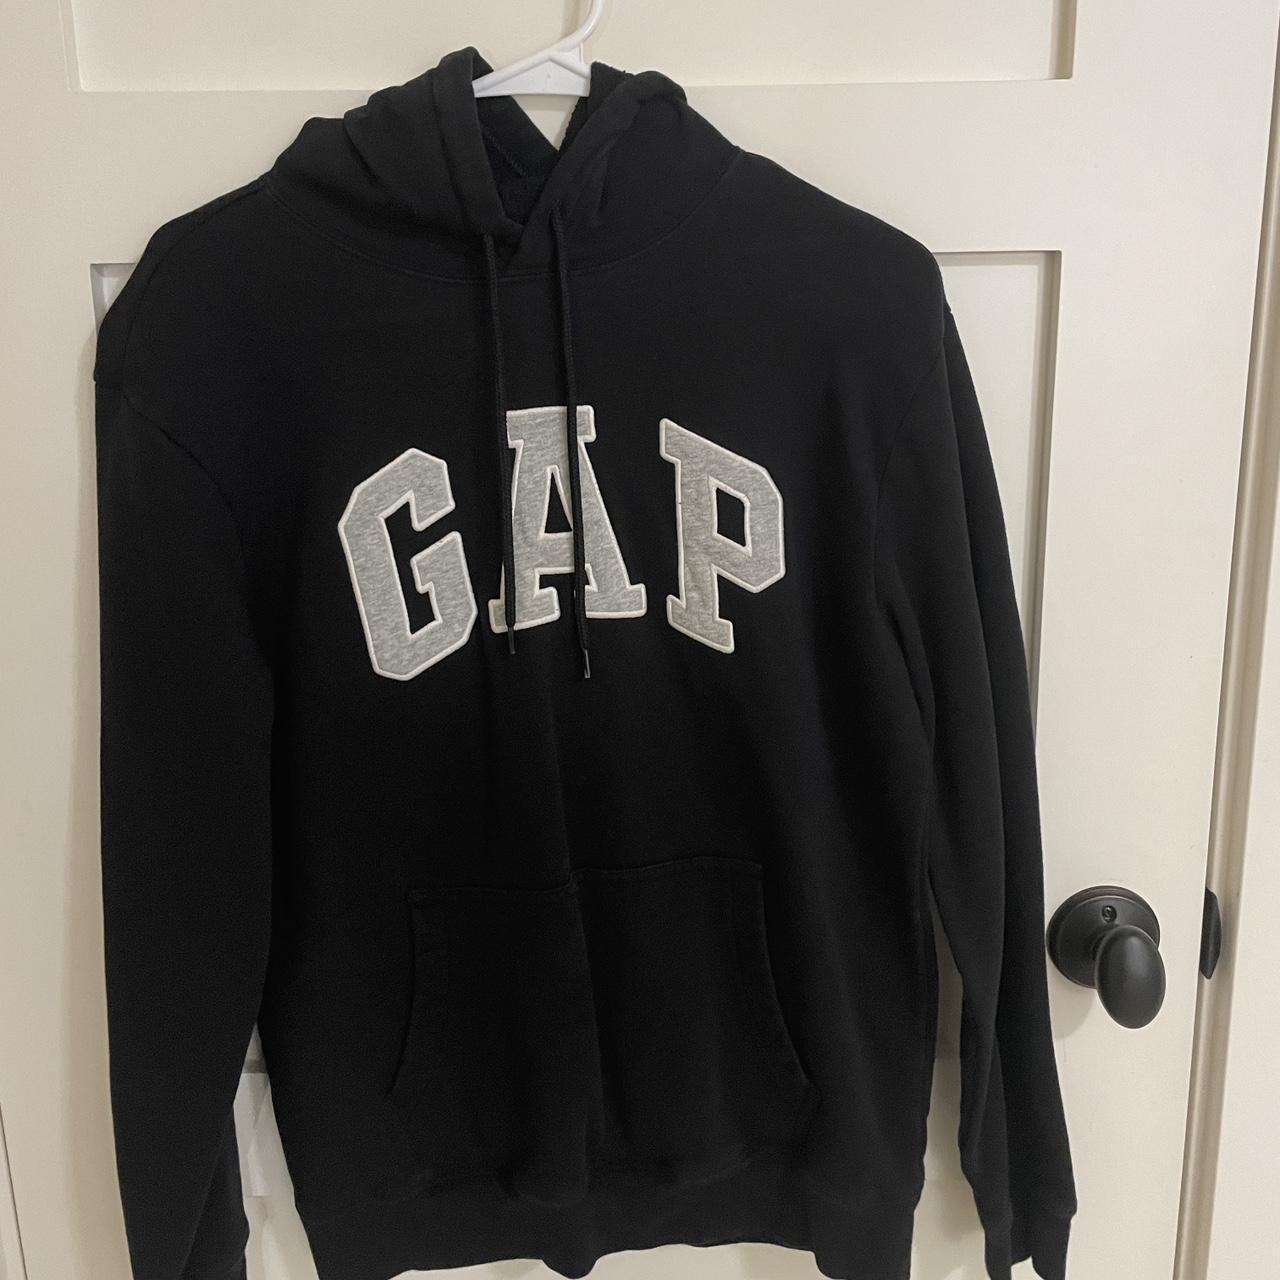 Gap Hoodie - - #gap #gaphoodie #vintagegap #skater - Depop